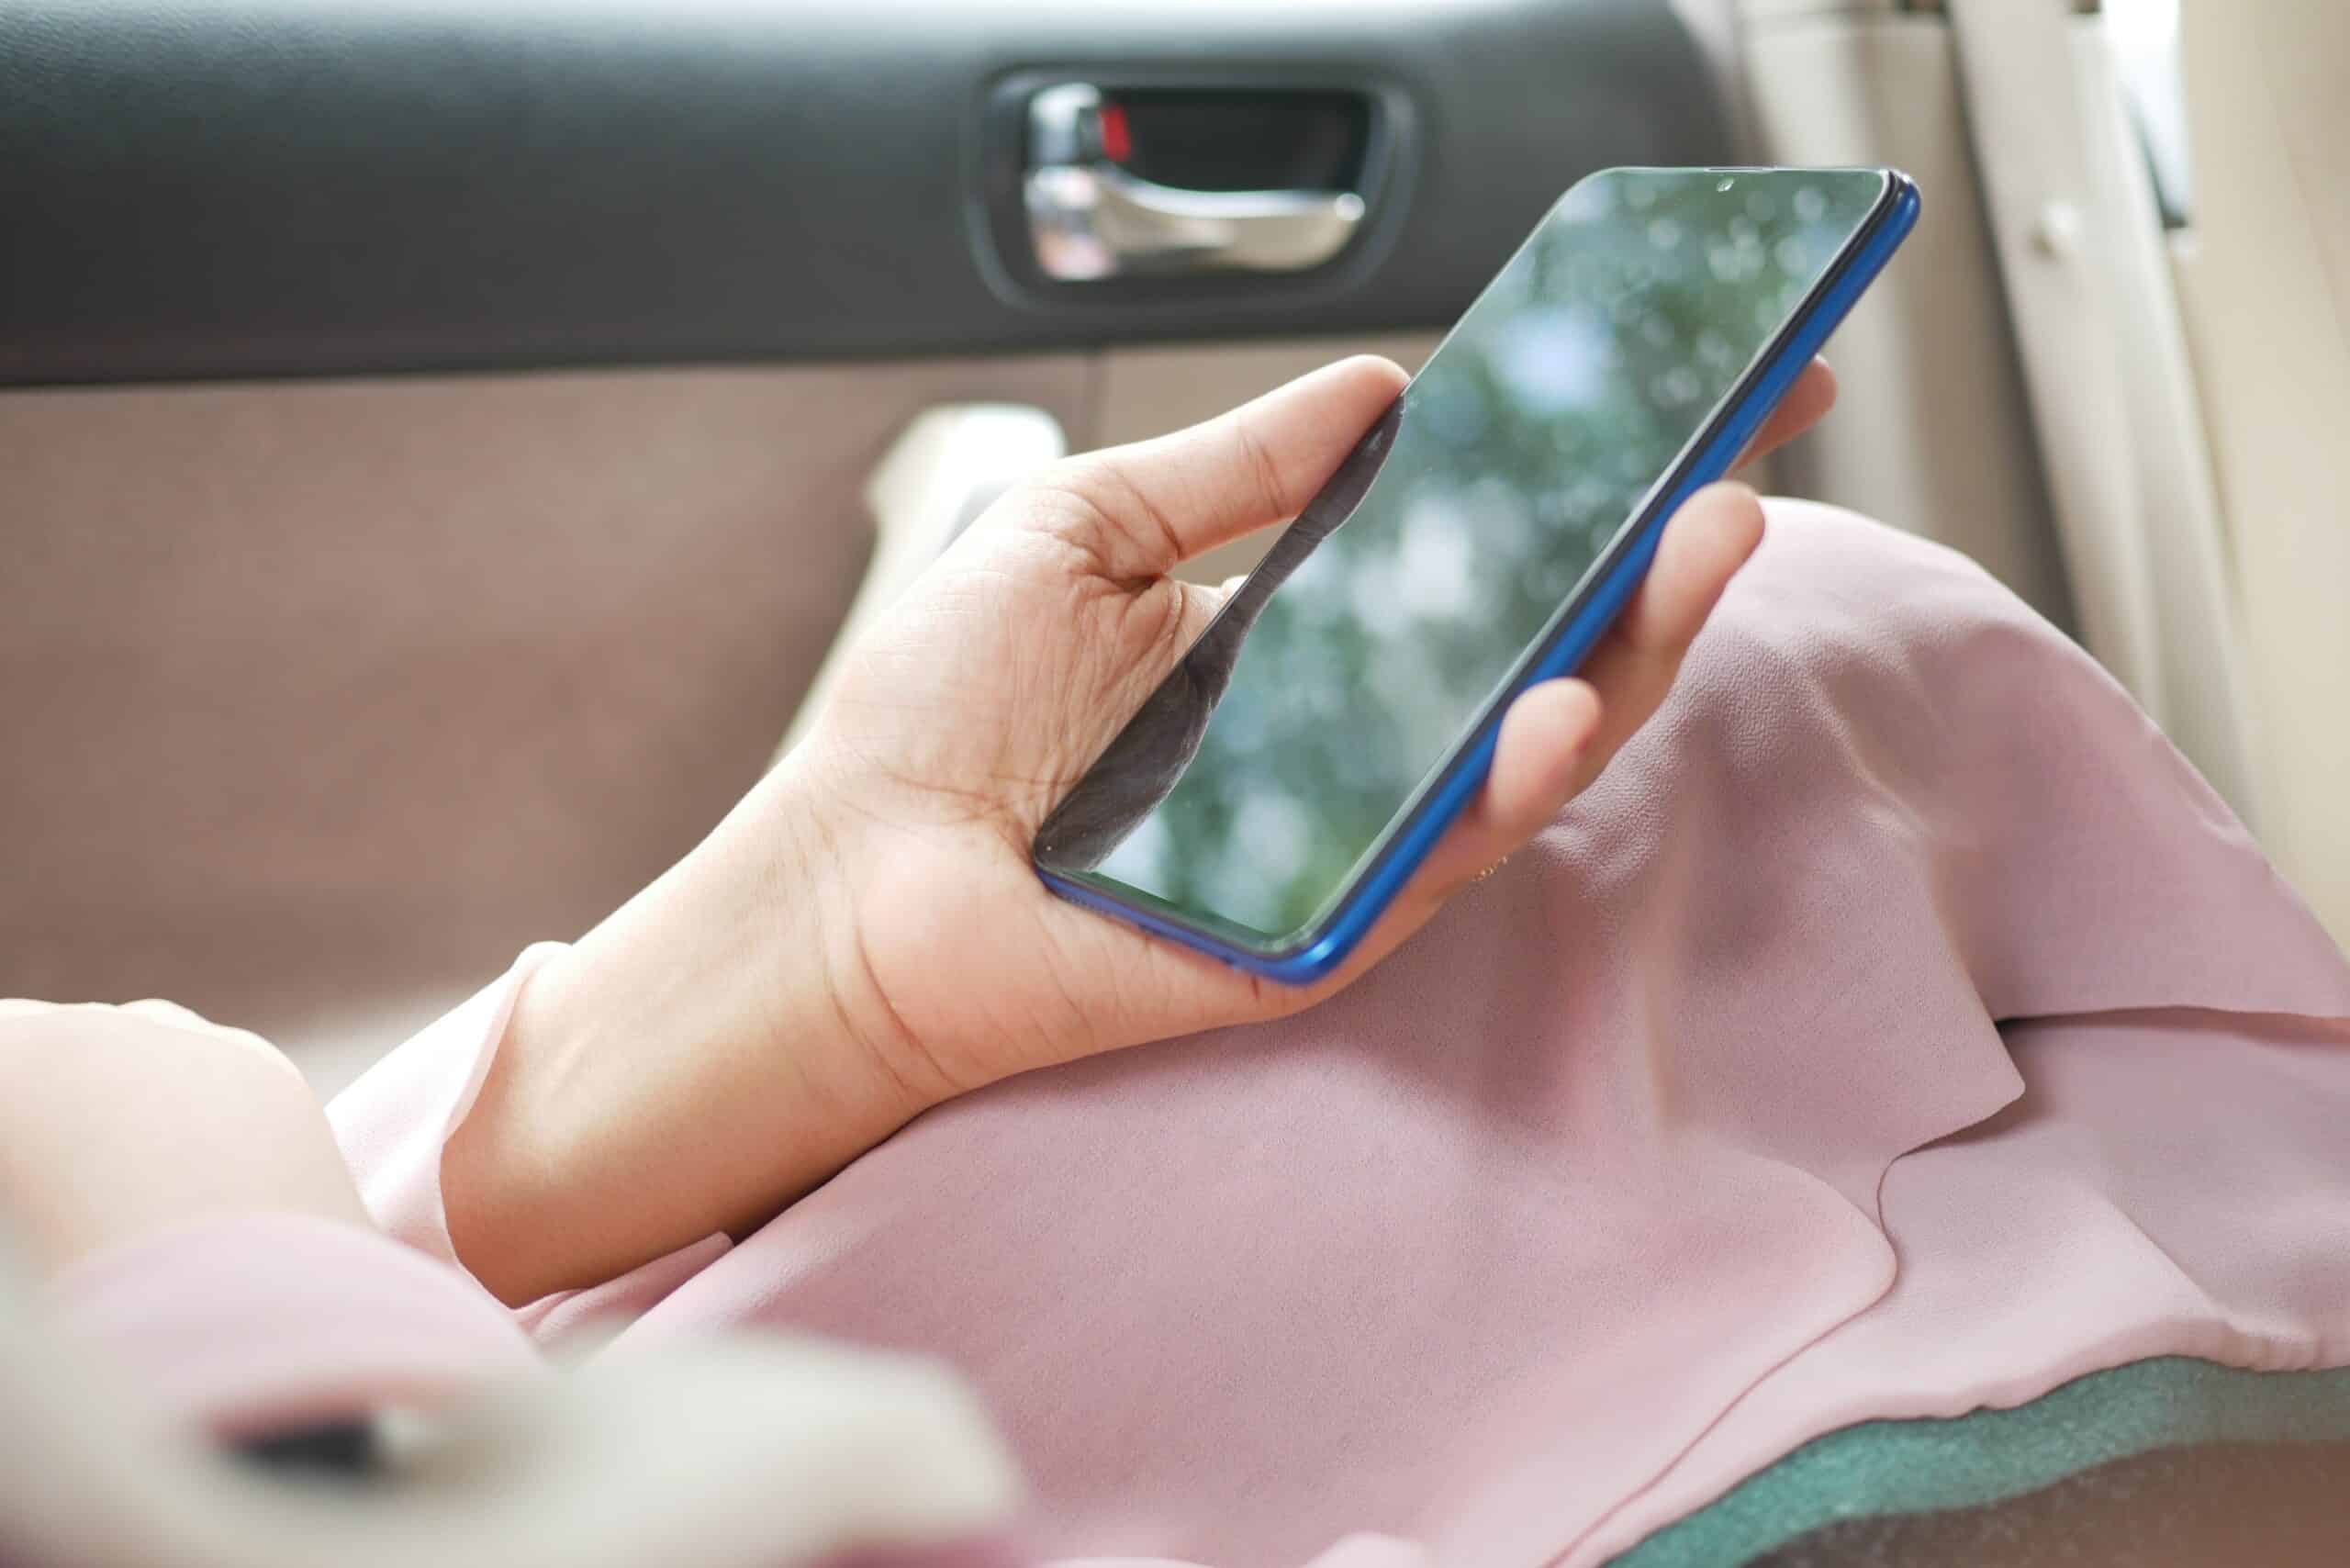 mão feminina branca segurando um celular smartphone dentro de um carro. É possível enxergar um casaco rosa deixado sobre suas pernas, onde a mão está apoiada com o celular